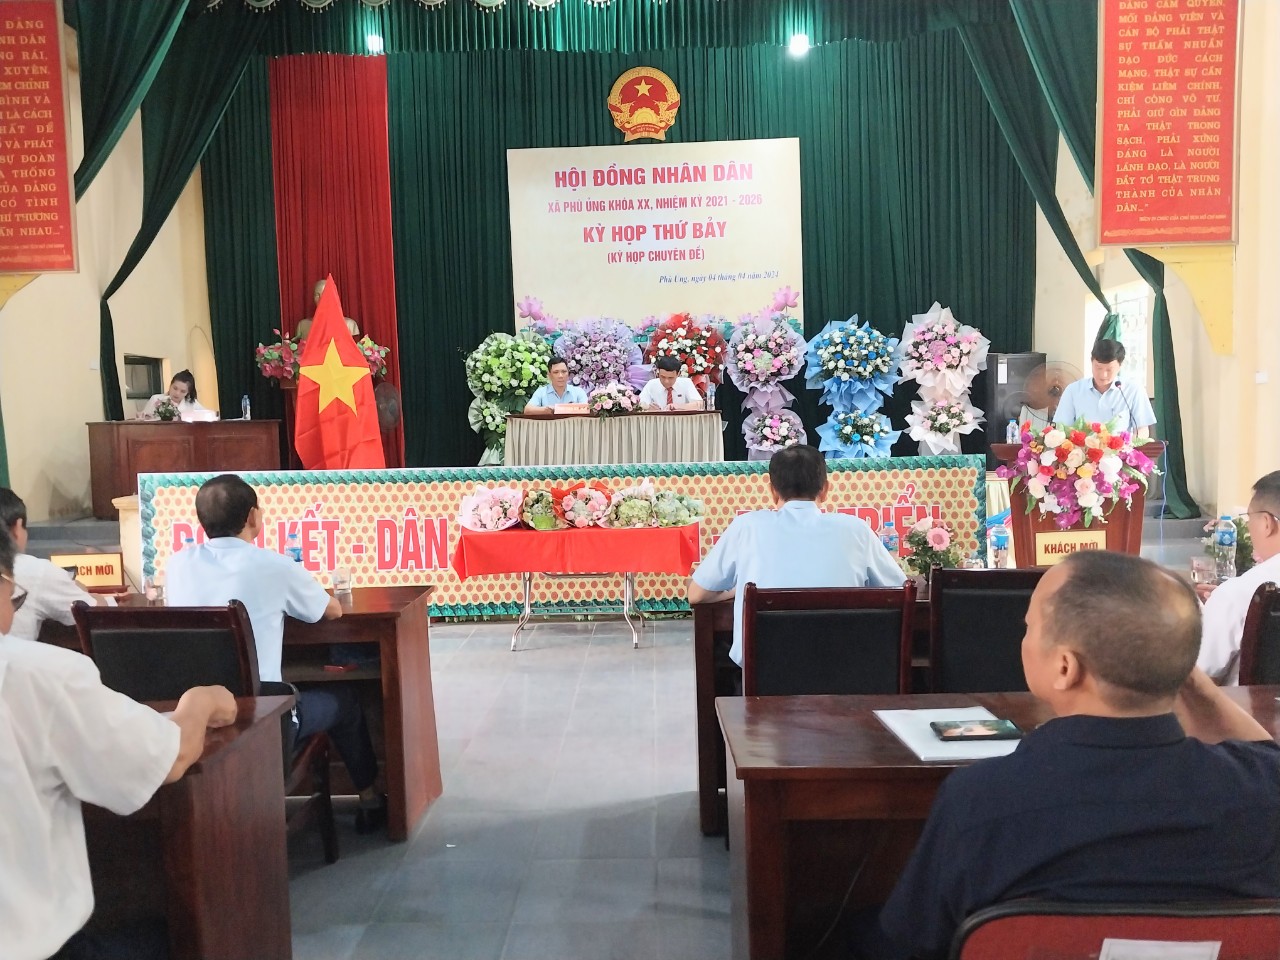 Hội đồng nhân dân xã Phù Ủng, huyện Ân Thi tổ chức Kỳ họp thứ Bảy (Kỳ họp chuyên đề)